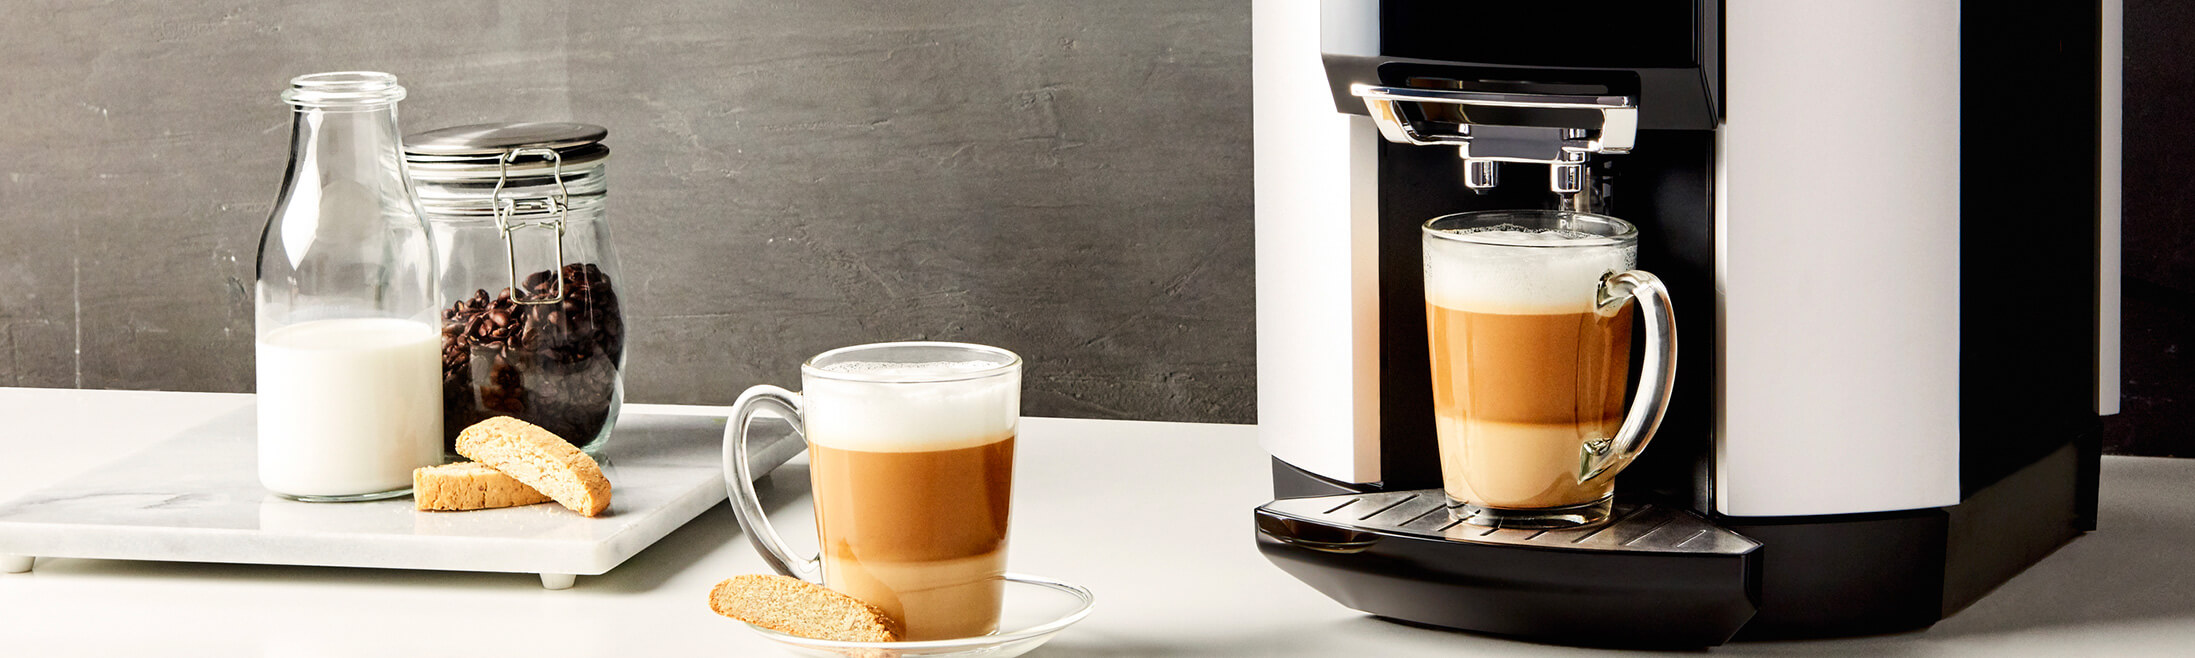 Nespresso XN741B cafetera eléctrica Máquina espresso, Cafetera de cápsulas